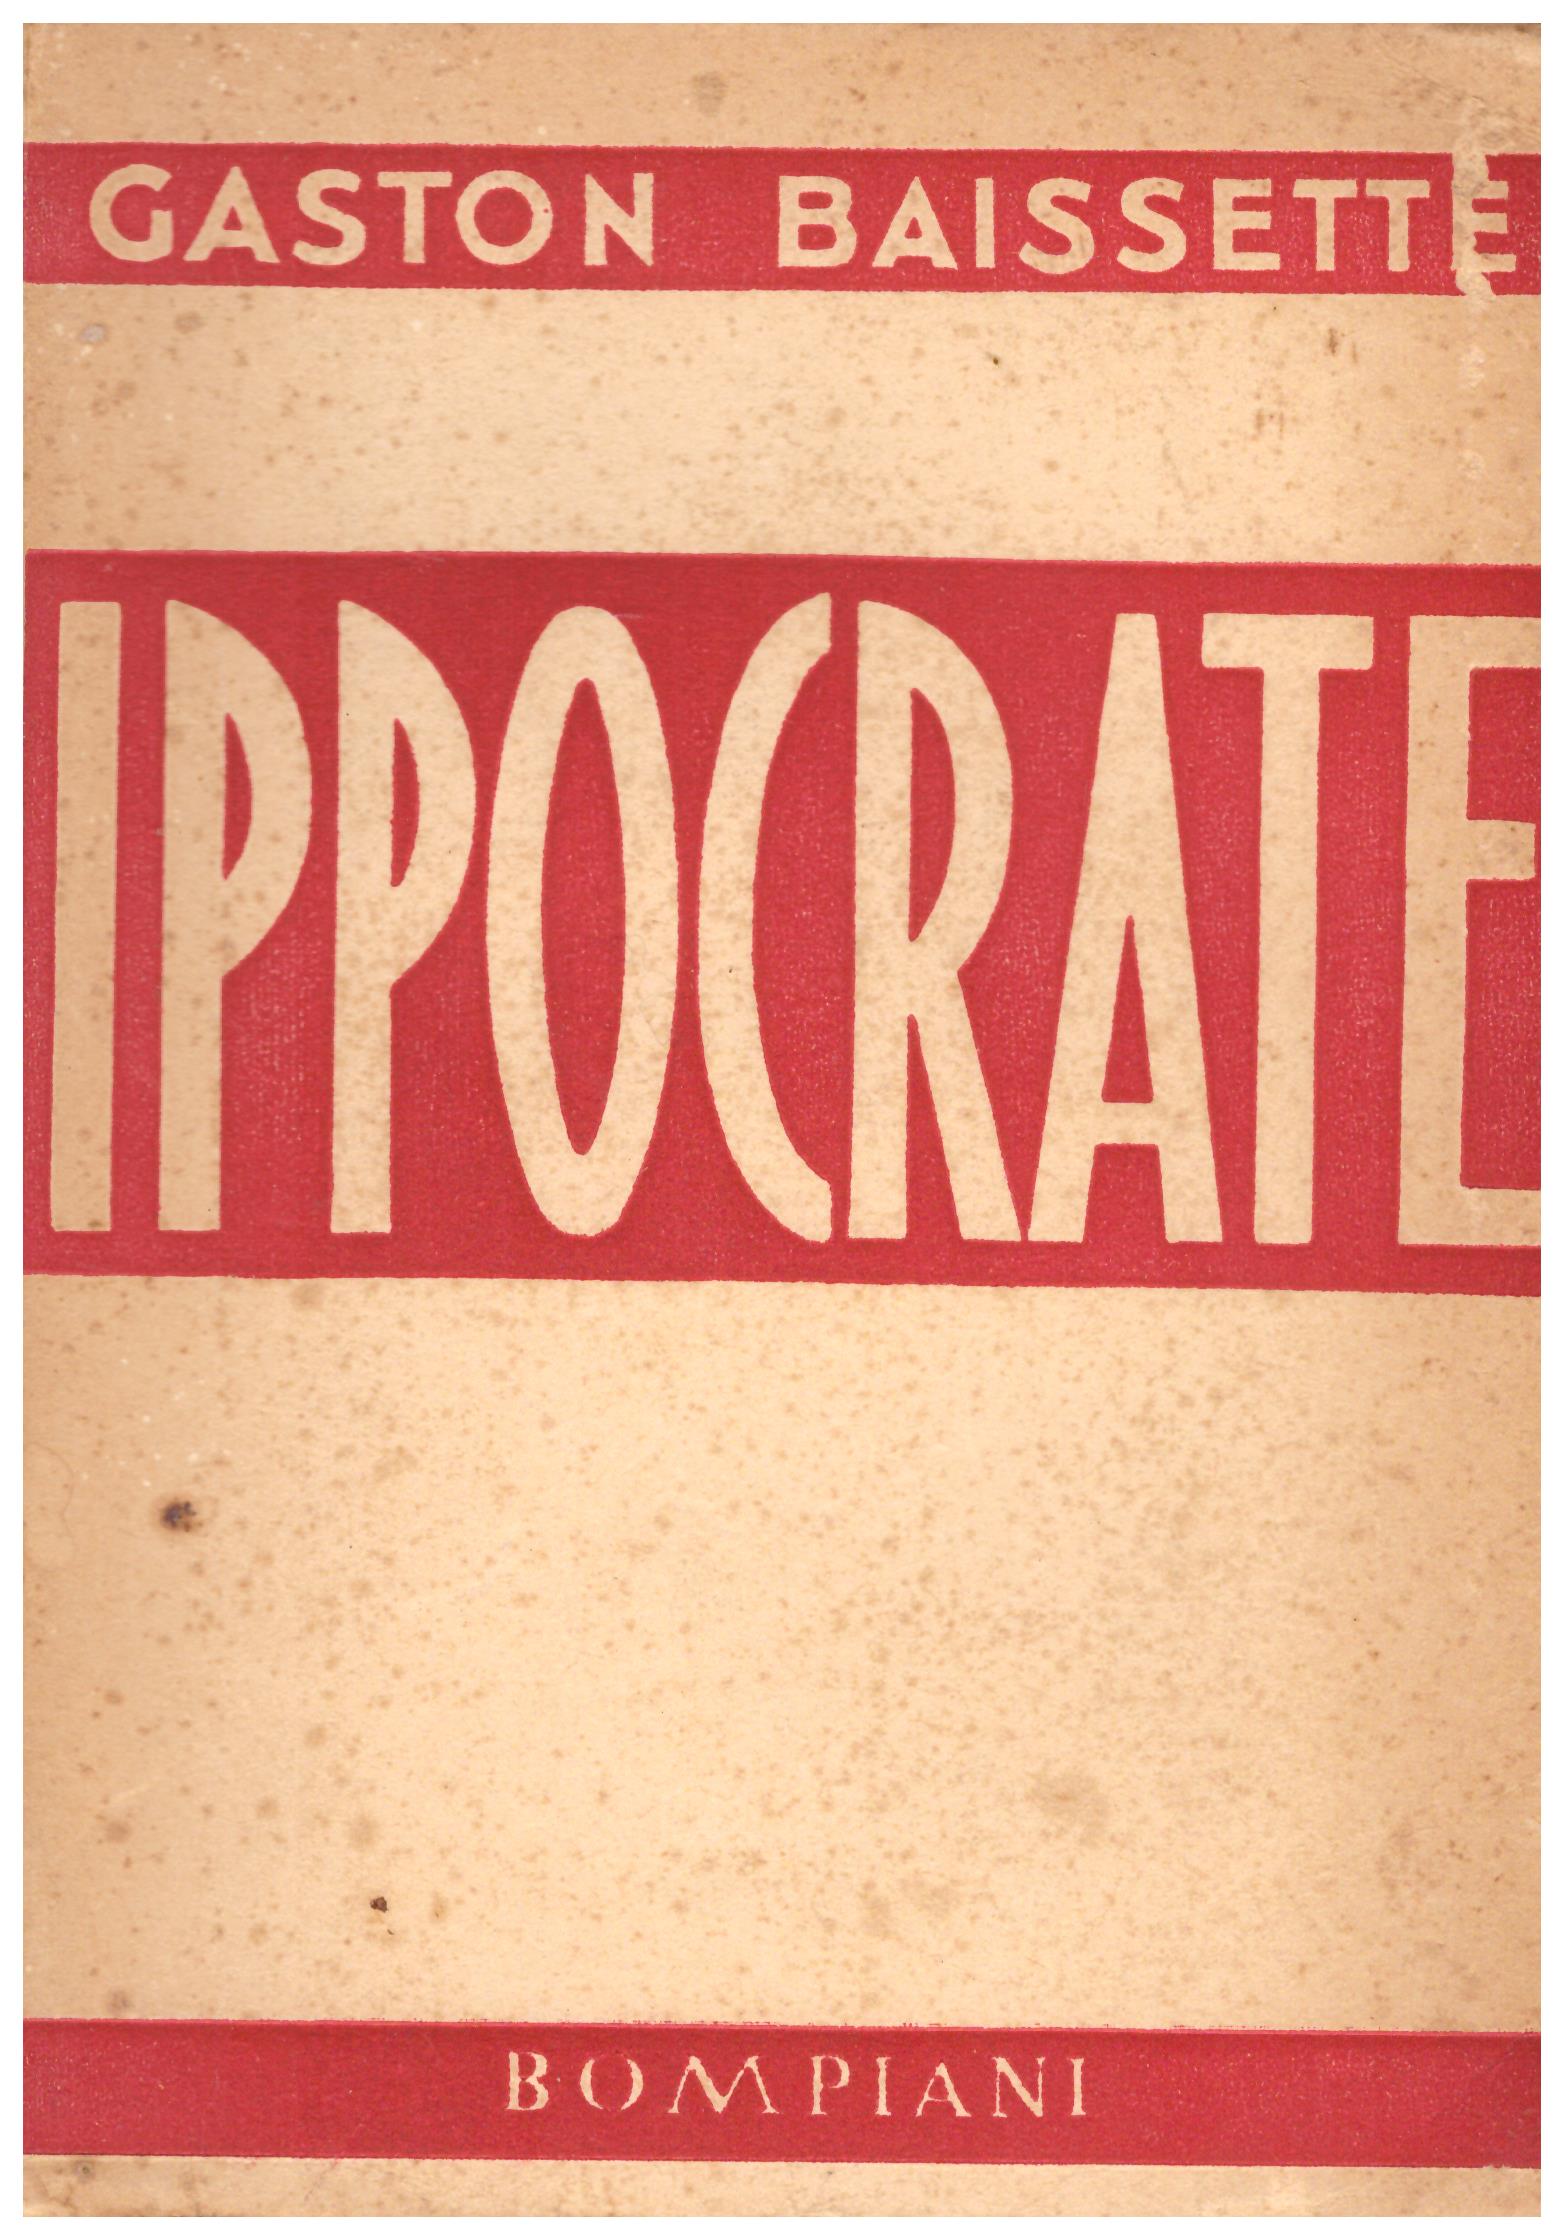 Titolo: Ippocrate Autore: Gaston Baissettè Editore: Bompiani 1933